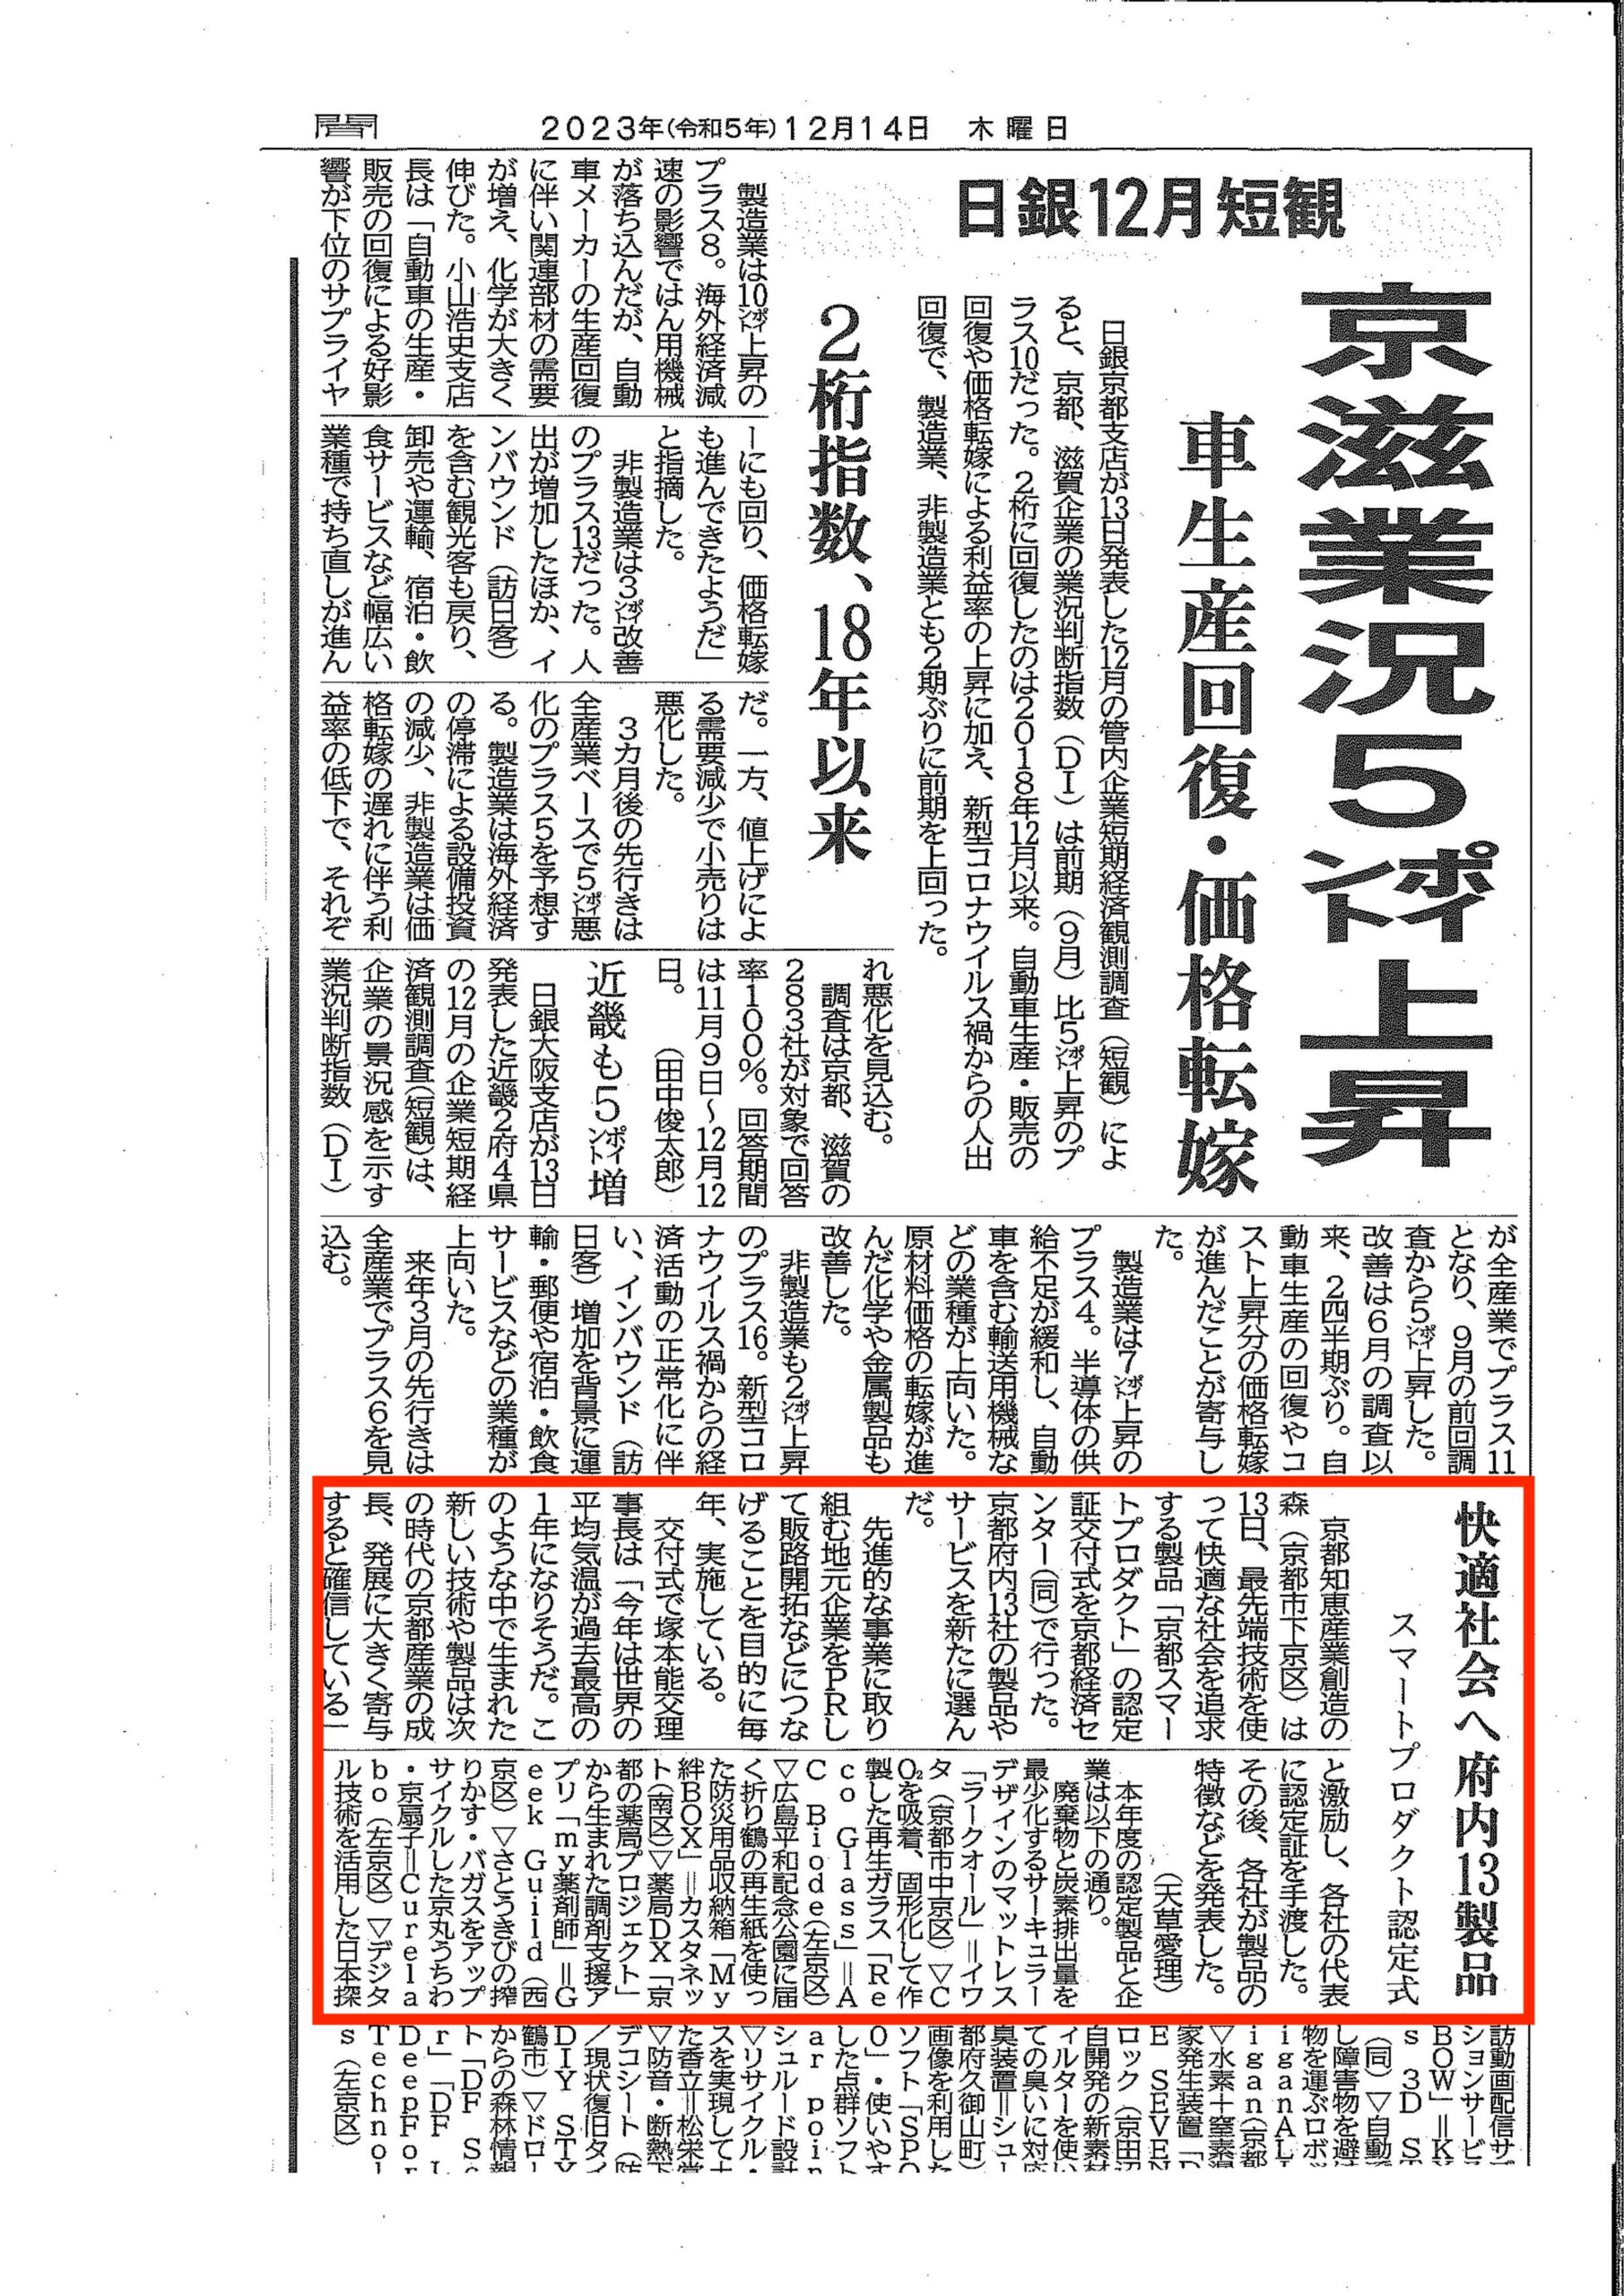 【掲載情報】京都新聞12/14に掲載されました。